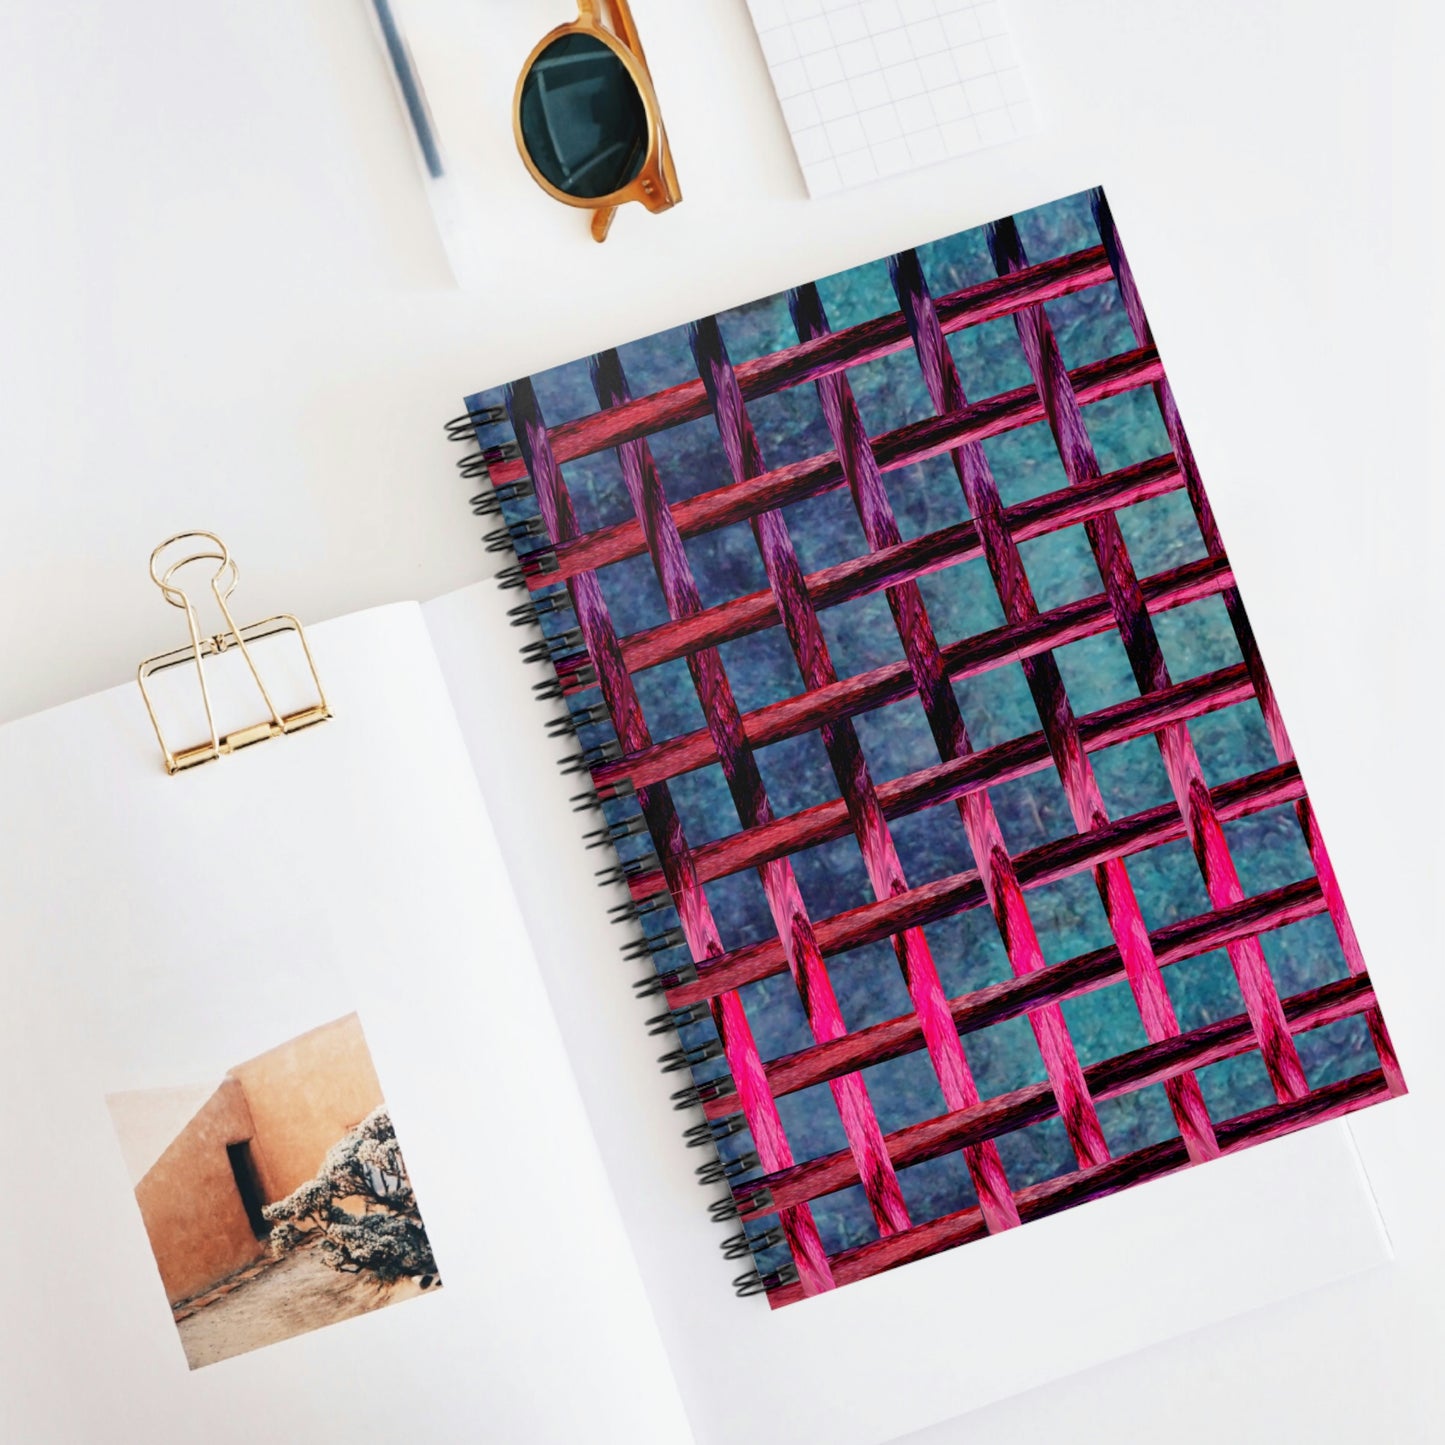 Purple Geode, Lattice Work, Spiral Notebook - Ruled Line